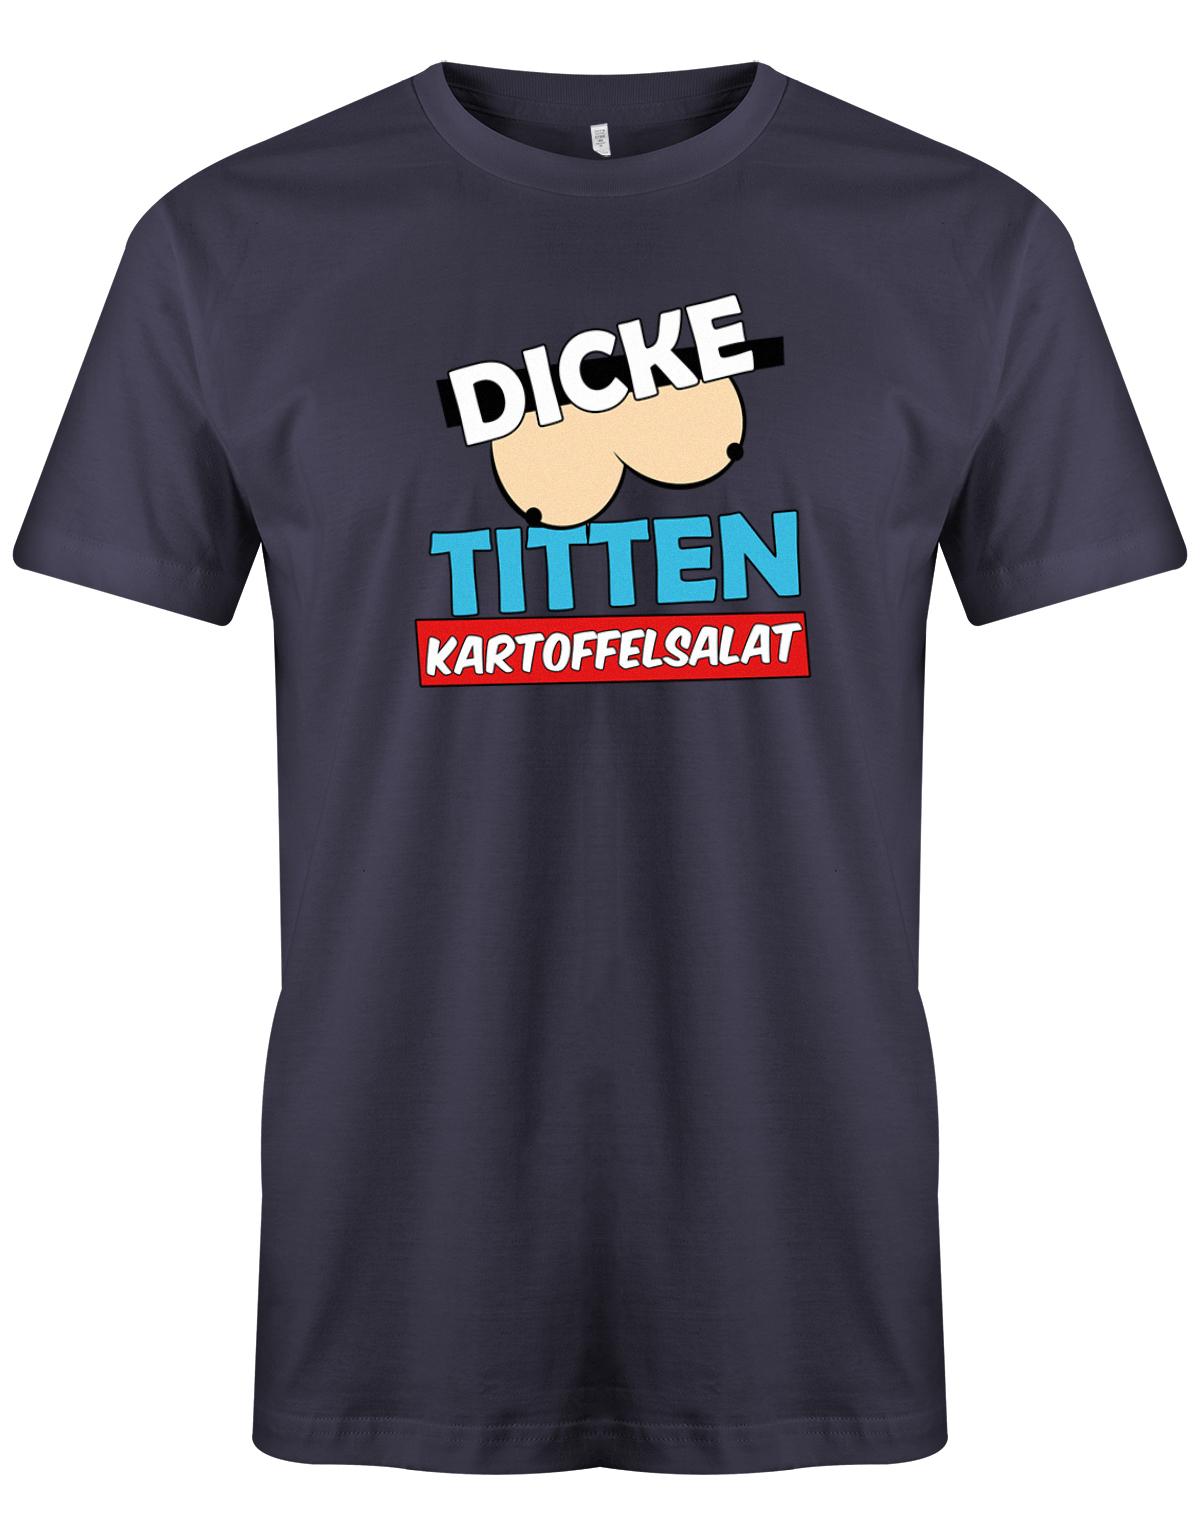 Dicke-Titten-Kartoffelsalat-Herren-Shirt-navy